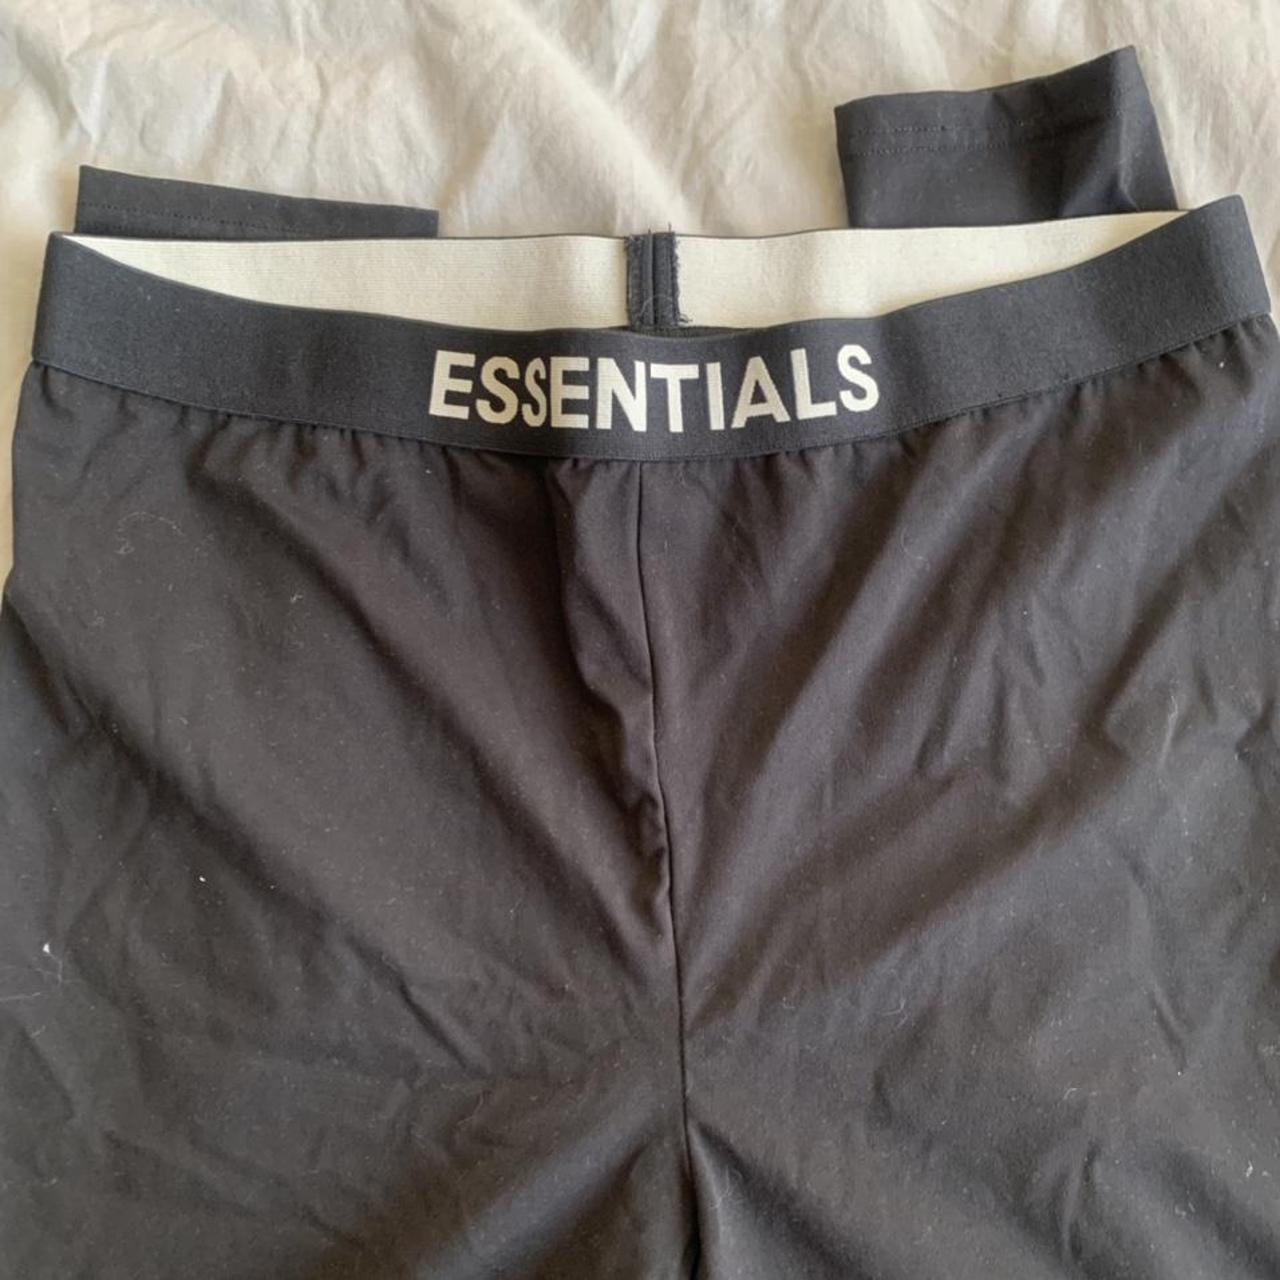 Essentials Fear of God leggings (fits big/long more... - Depop